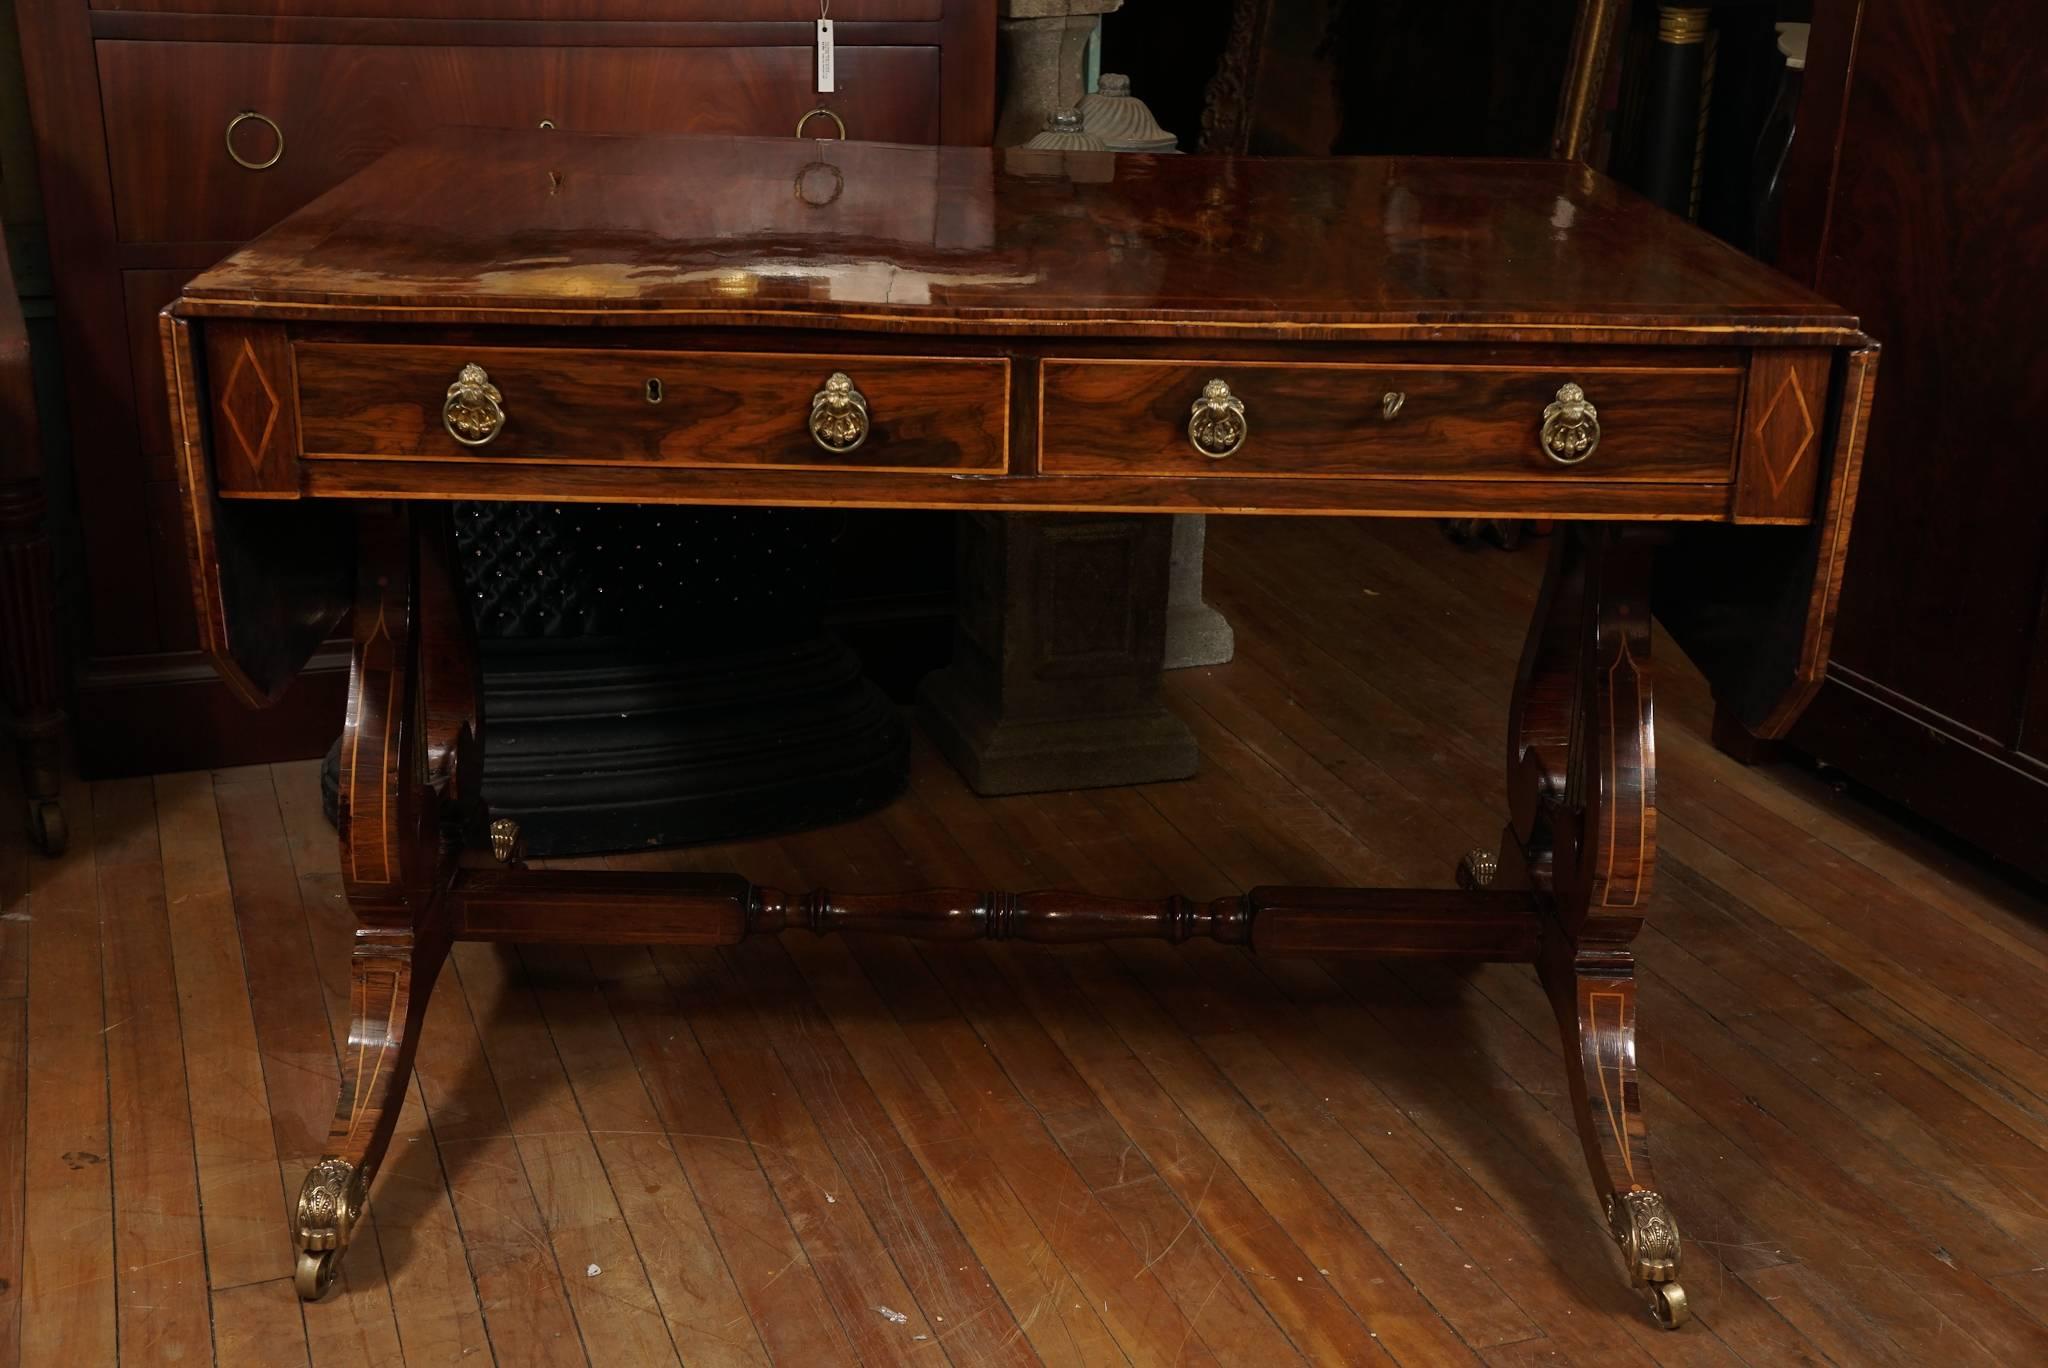 Dieser Sofatisch aus dieser Zeit ist ein schönes Beispiel für ein Möbelstück im klassischen Stil. Der Tisch wurde um 1815 gebaut und weist eine schöne Holzmaserung auf, die die sorgfältige handwerkliche Verarbeitung durch den Hersteller zeigt.